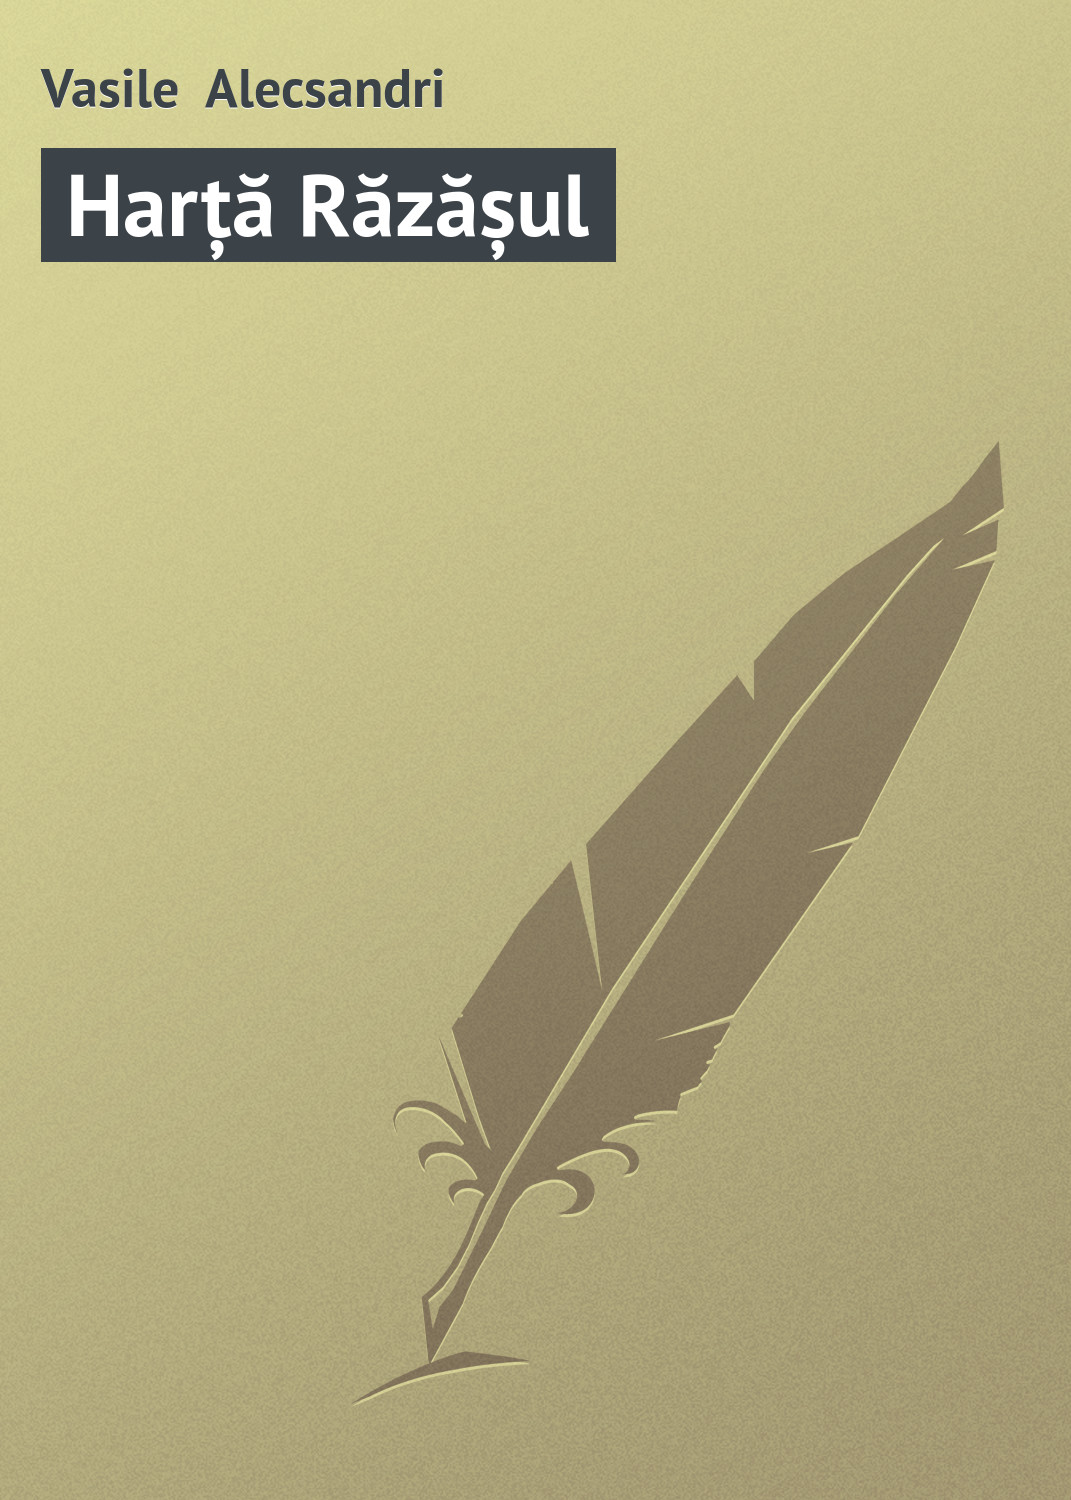 Книга Harță Răzășul из серии , созданная Vasile Alecsandri, может относится к жанру Зарубежная старинная литература, Зарубежная классика. Стоимость электронной книги Harță Răzășul с идентификатором 21103070 составляет 5.99 руб.